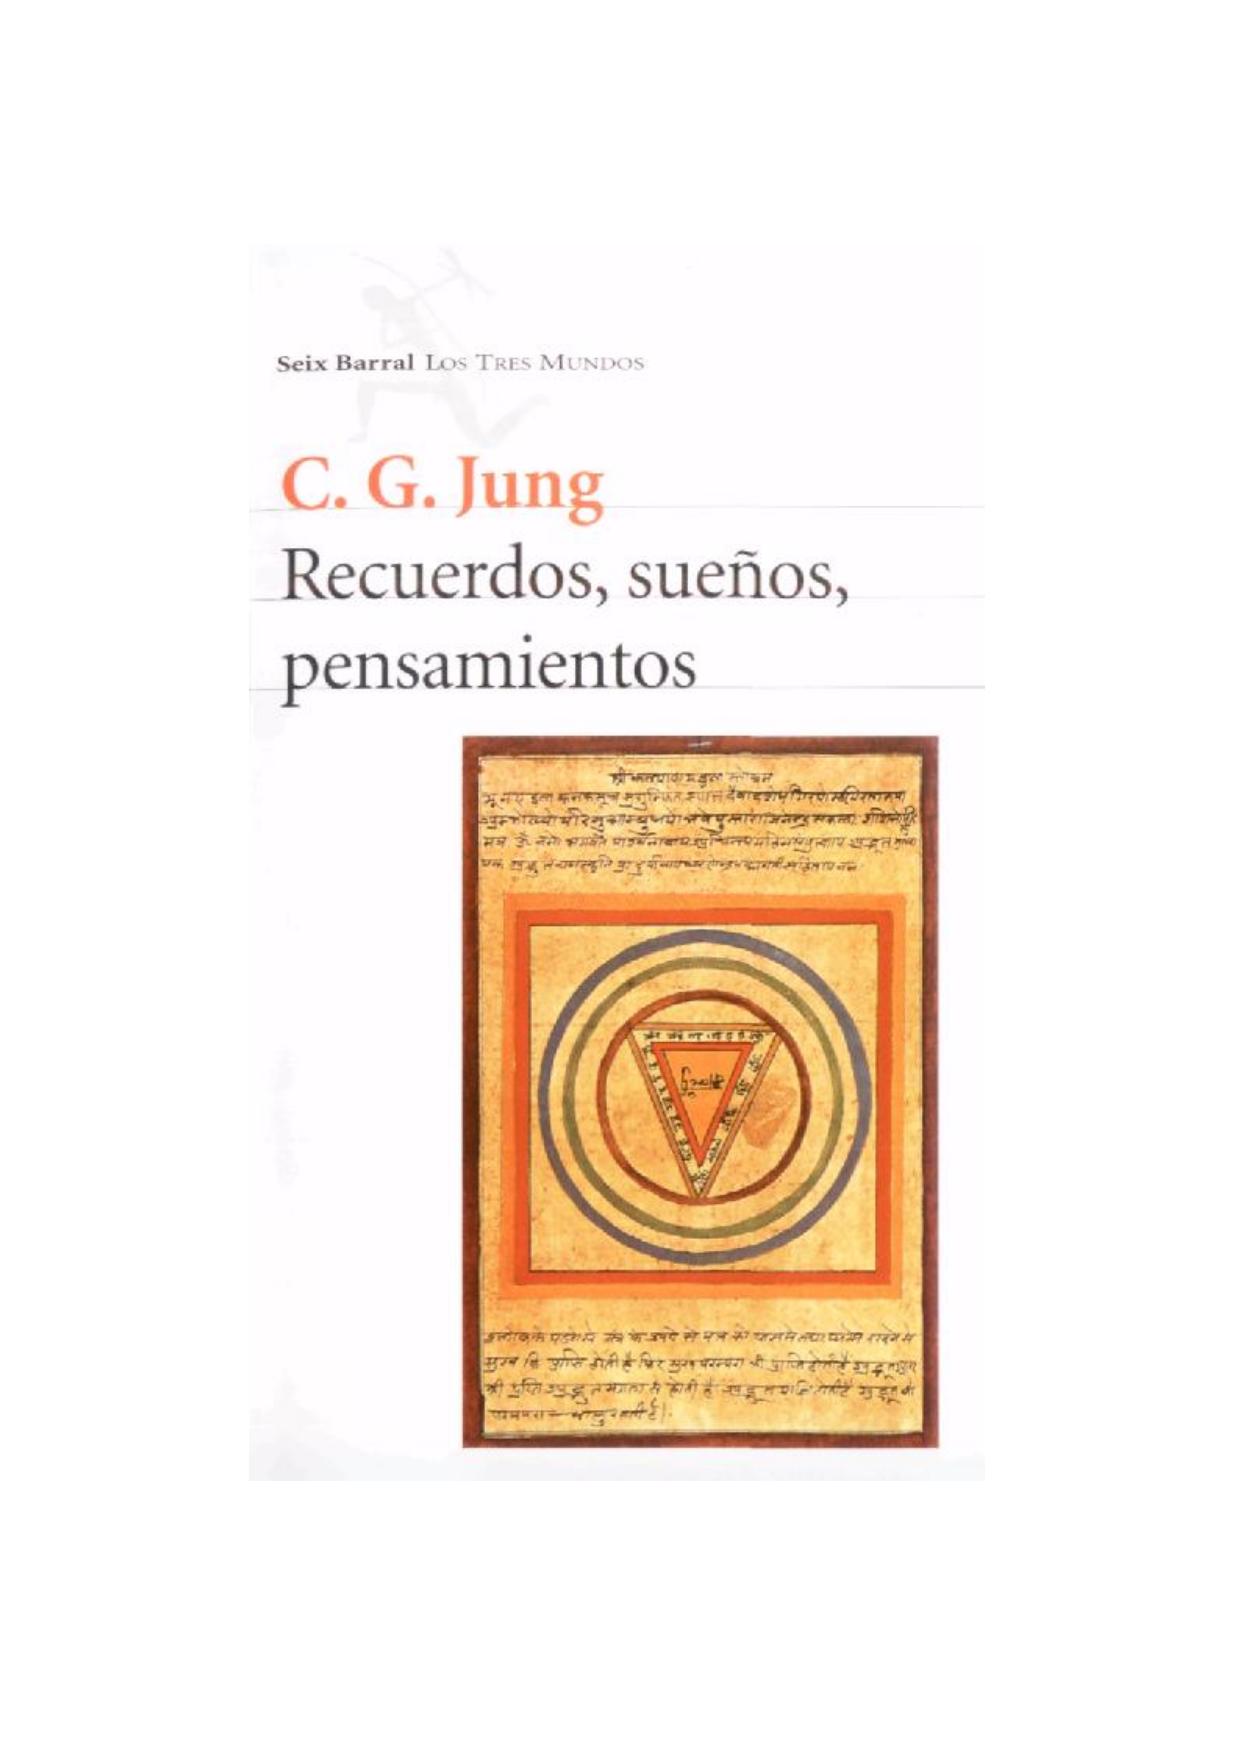 C. G. Jung - Recuerdos, sueños, pensamientos